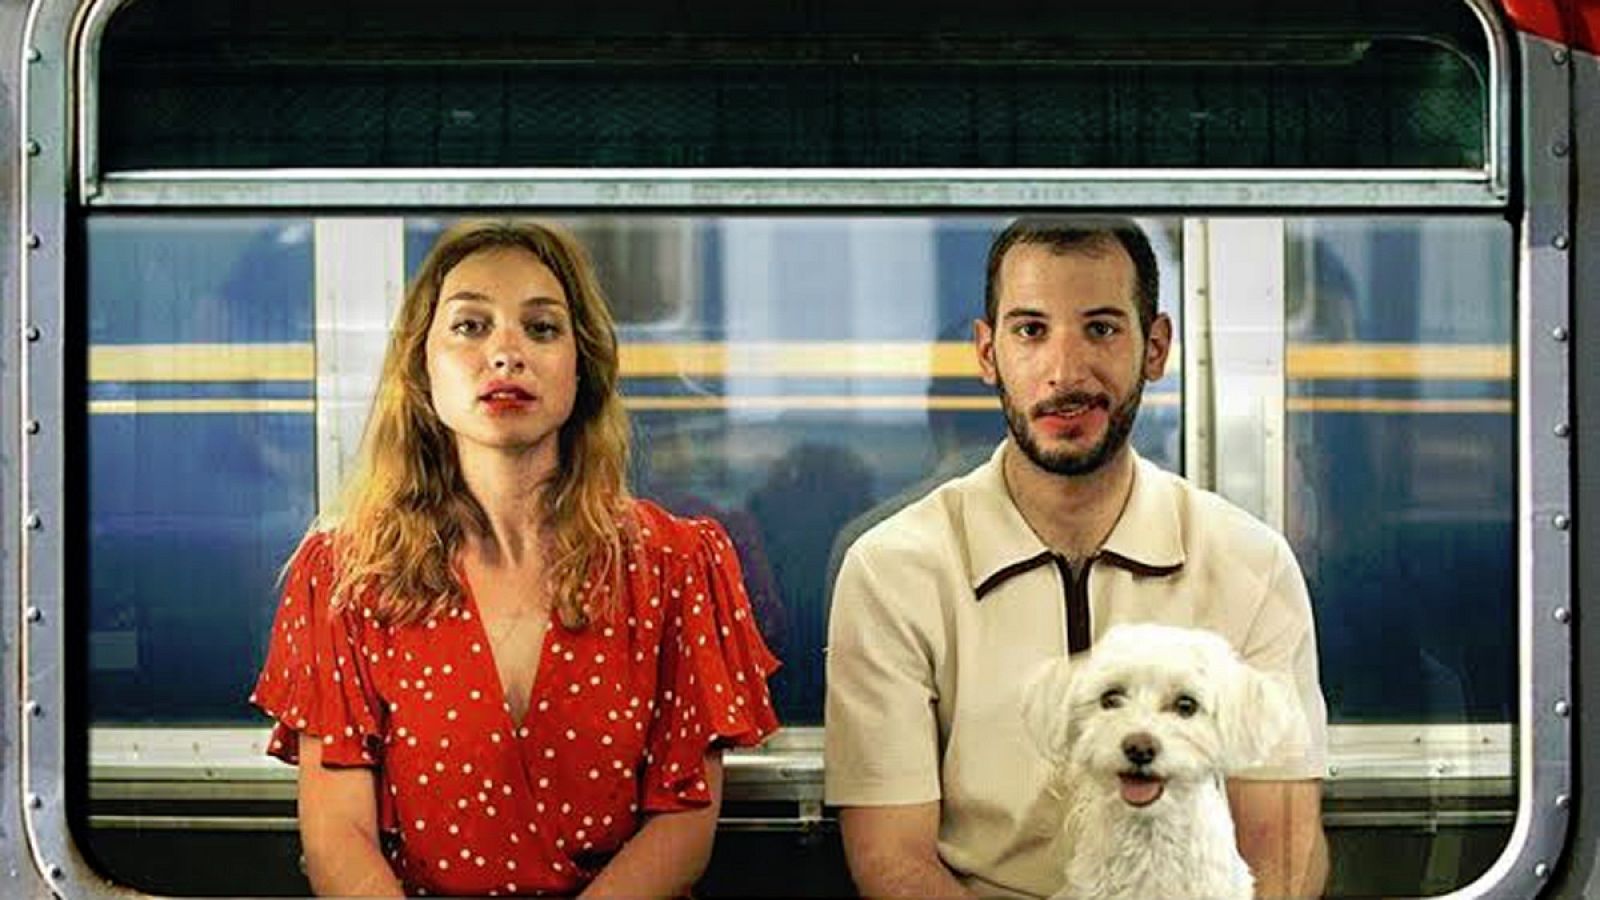 Imagen del cartel de 'El beso corto', el nuevo film dirigido por David Priego con Lourdes Hernández (Russian Red) y Carlos Troya como protagonsitas